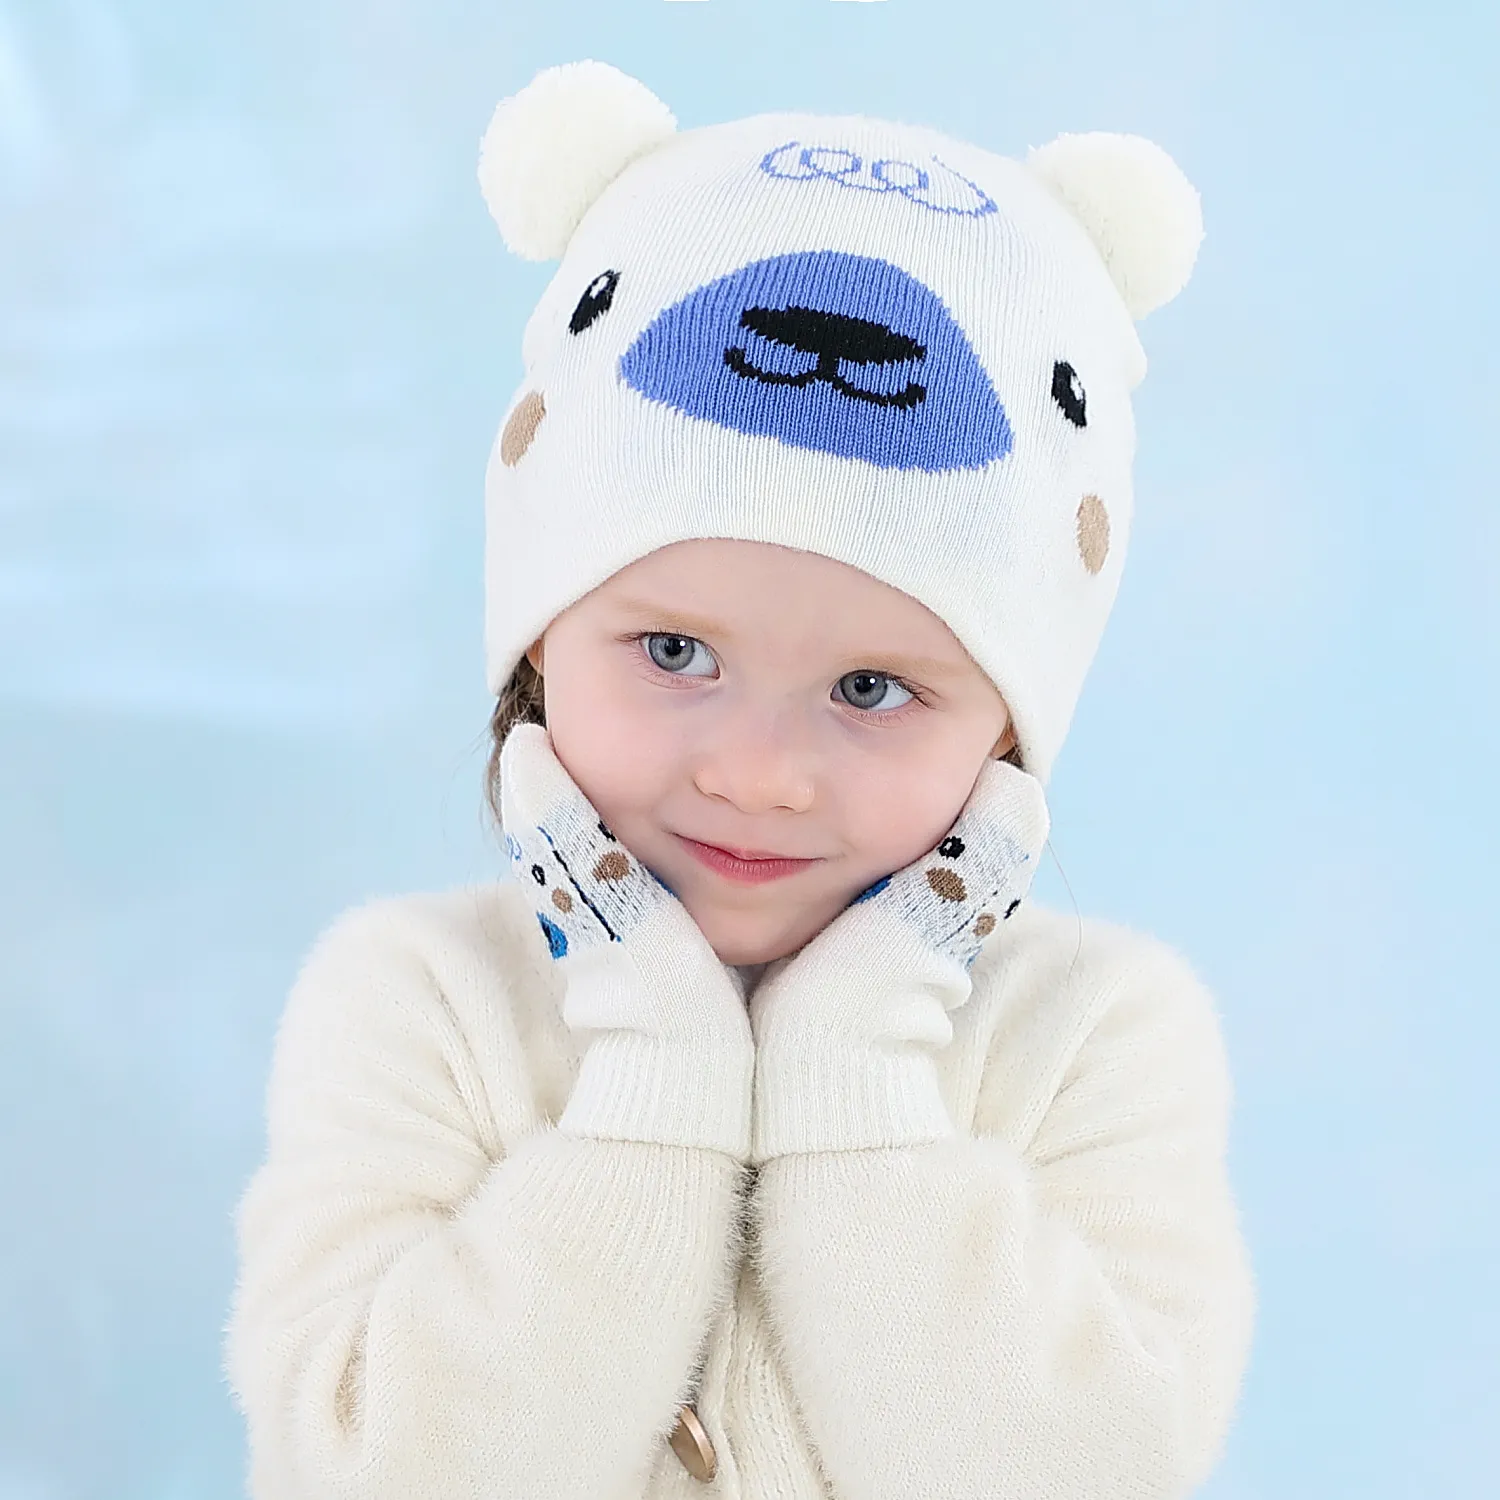 M425ヨーロッパファッション冬暖かい赤ちゃん漫画動物ニット帽子ミトンセット子供の赤ちゃんウールボール帽子ビーニーグローブ子供の帽子+手袋2本/セット